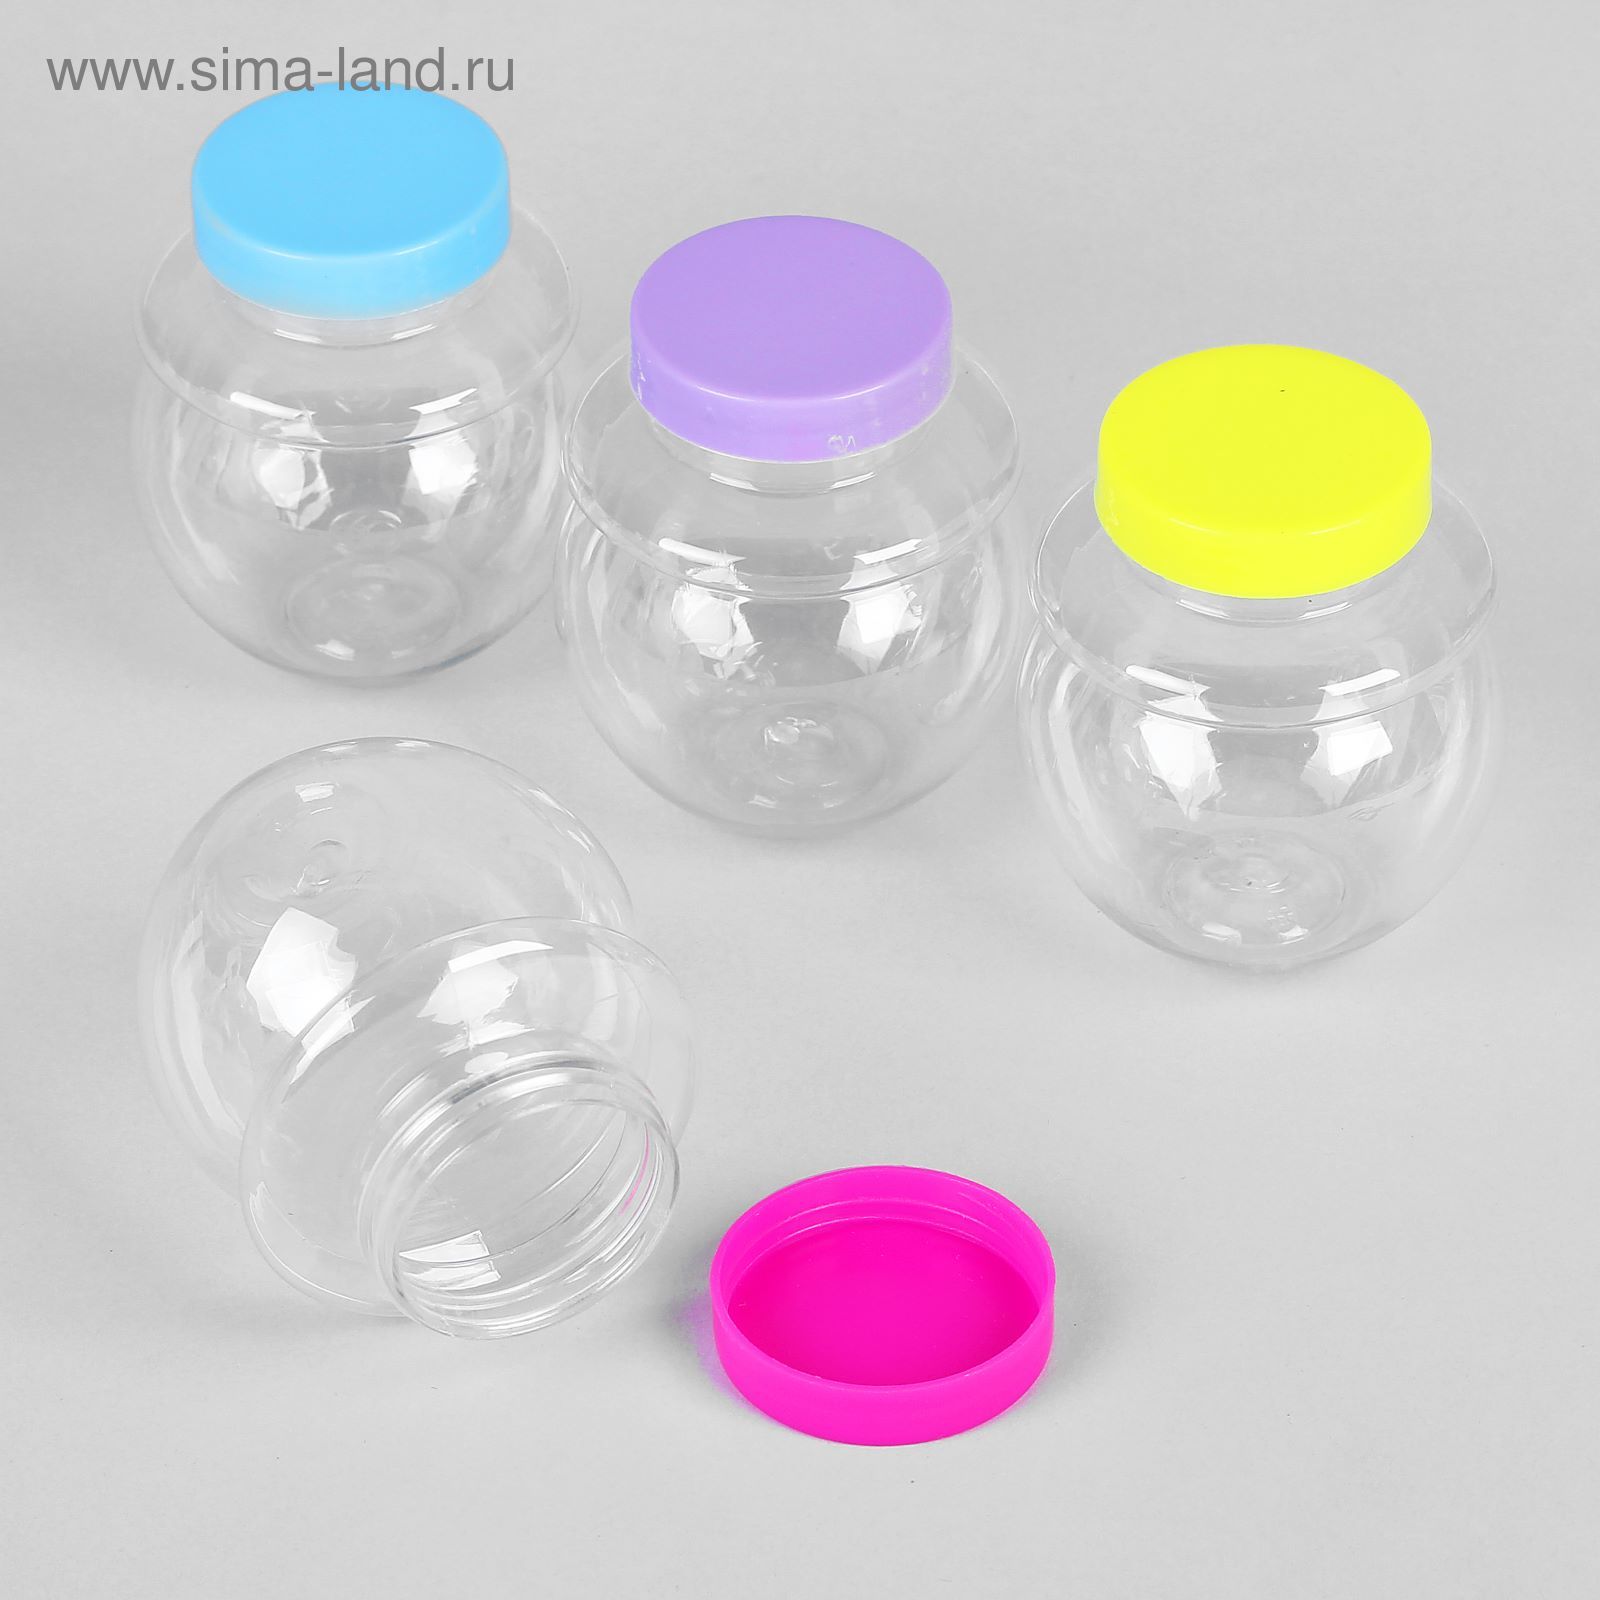 Посуда для слайма. Пластиковые баночки. Баночка пластиковая маленькая. Баночка пластиковая круглая. Красивые пластиковые баночки.